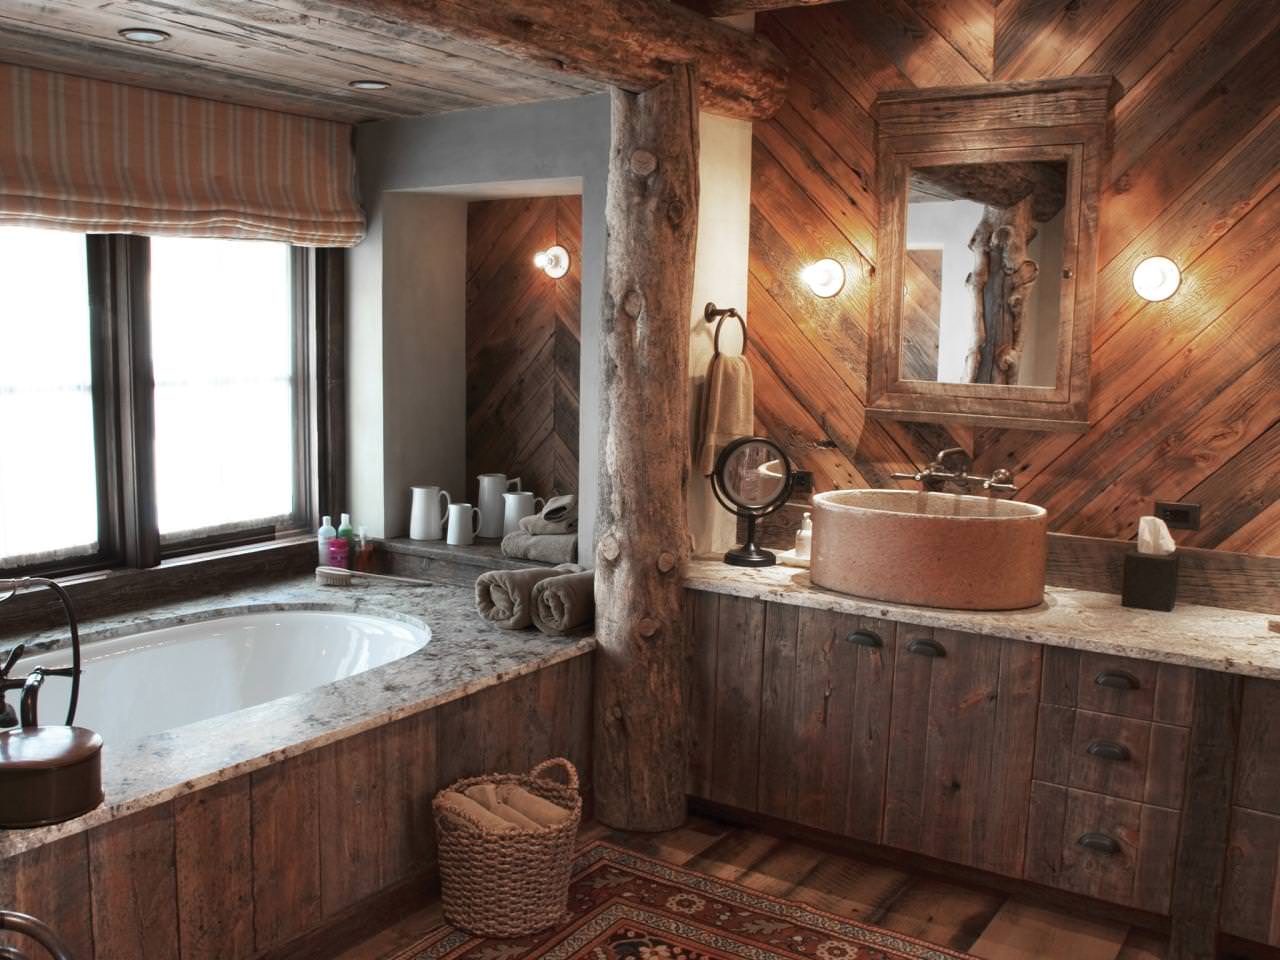 Łazienka w drewnianym domu: zdjęcie wnętrza pięknego wykończenia w domu z baru